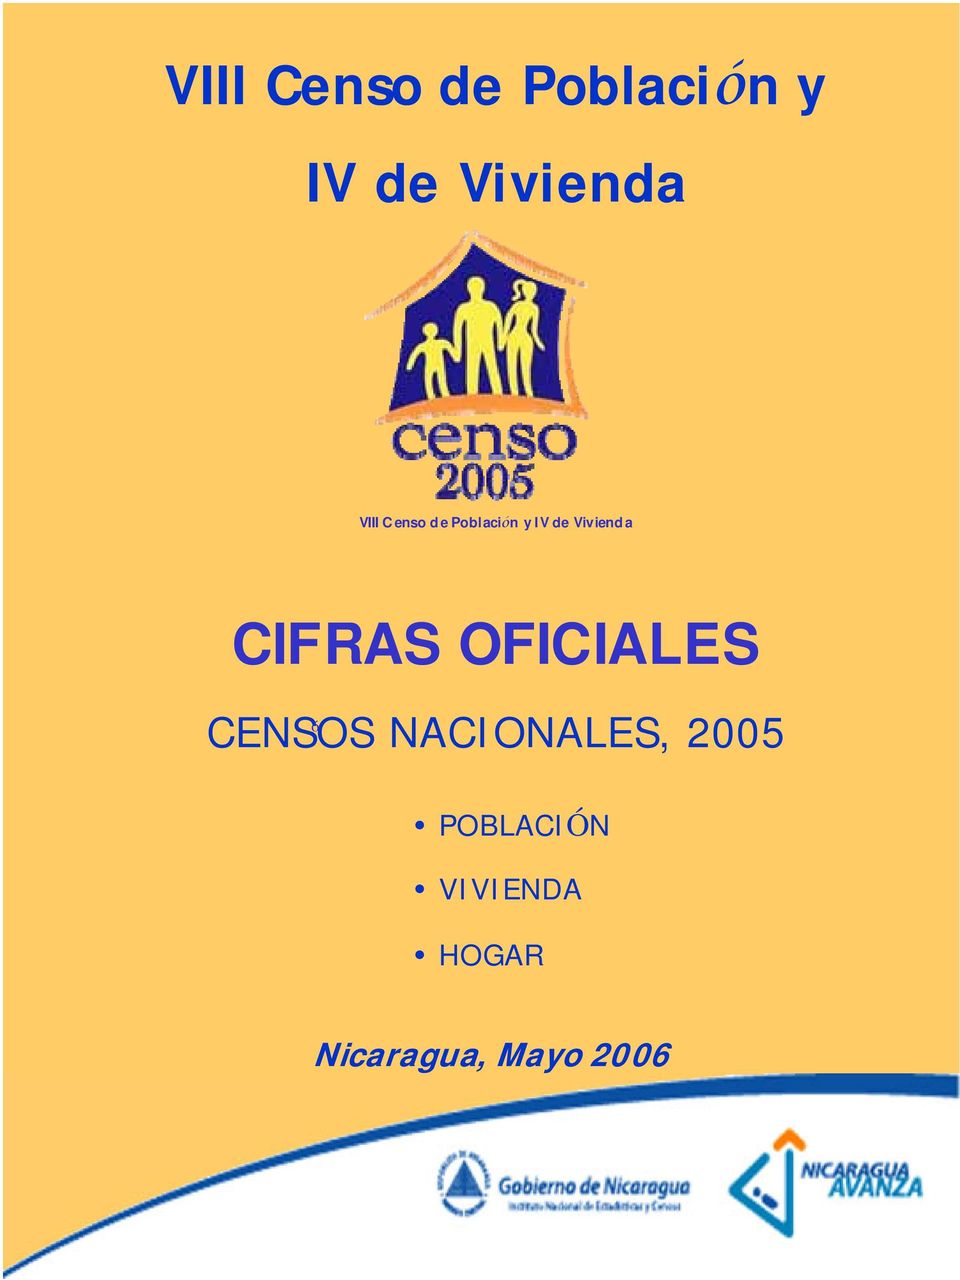 CIFRAS OFICIALES ó CENSOS NACIONALES, 2005